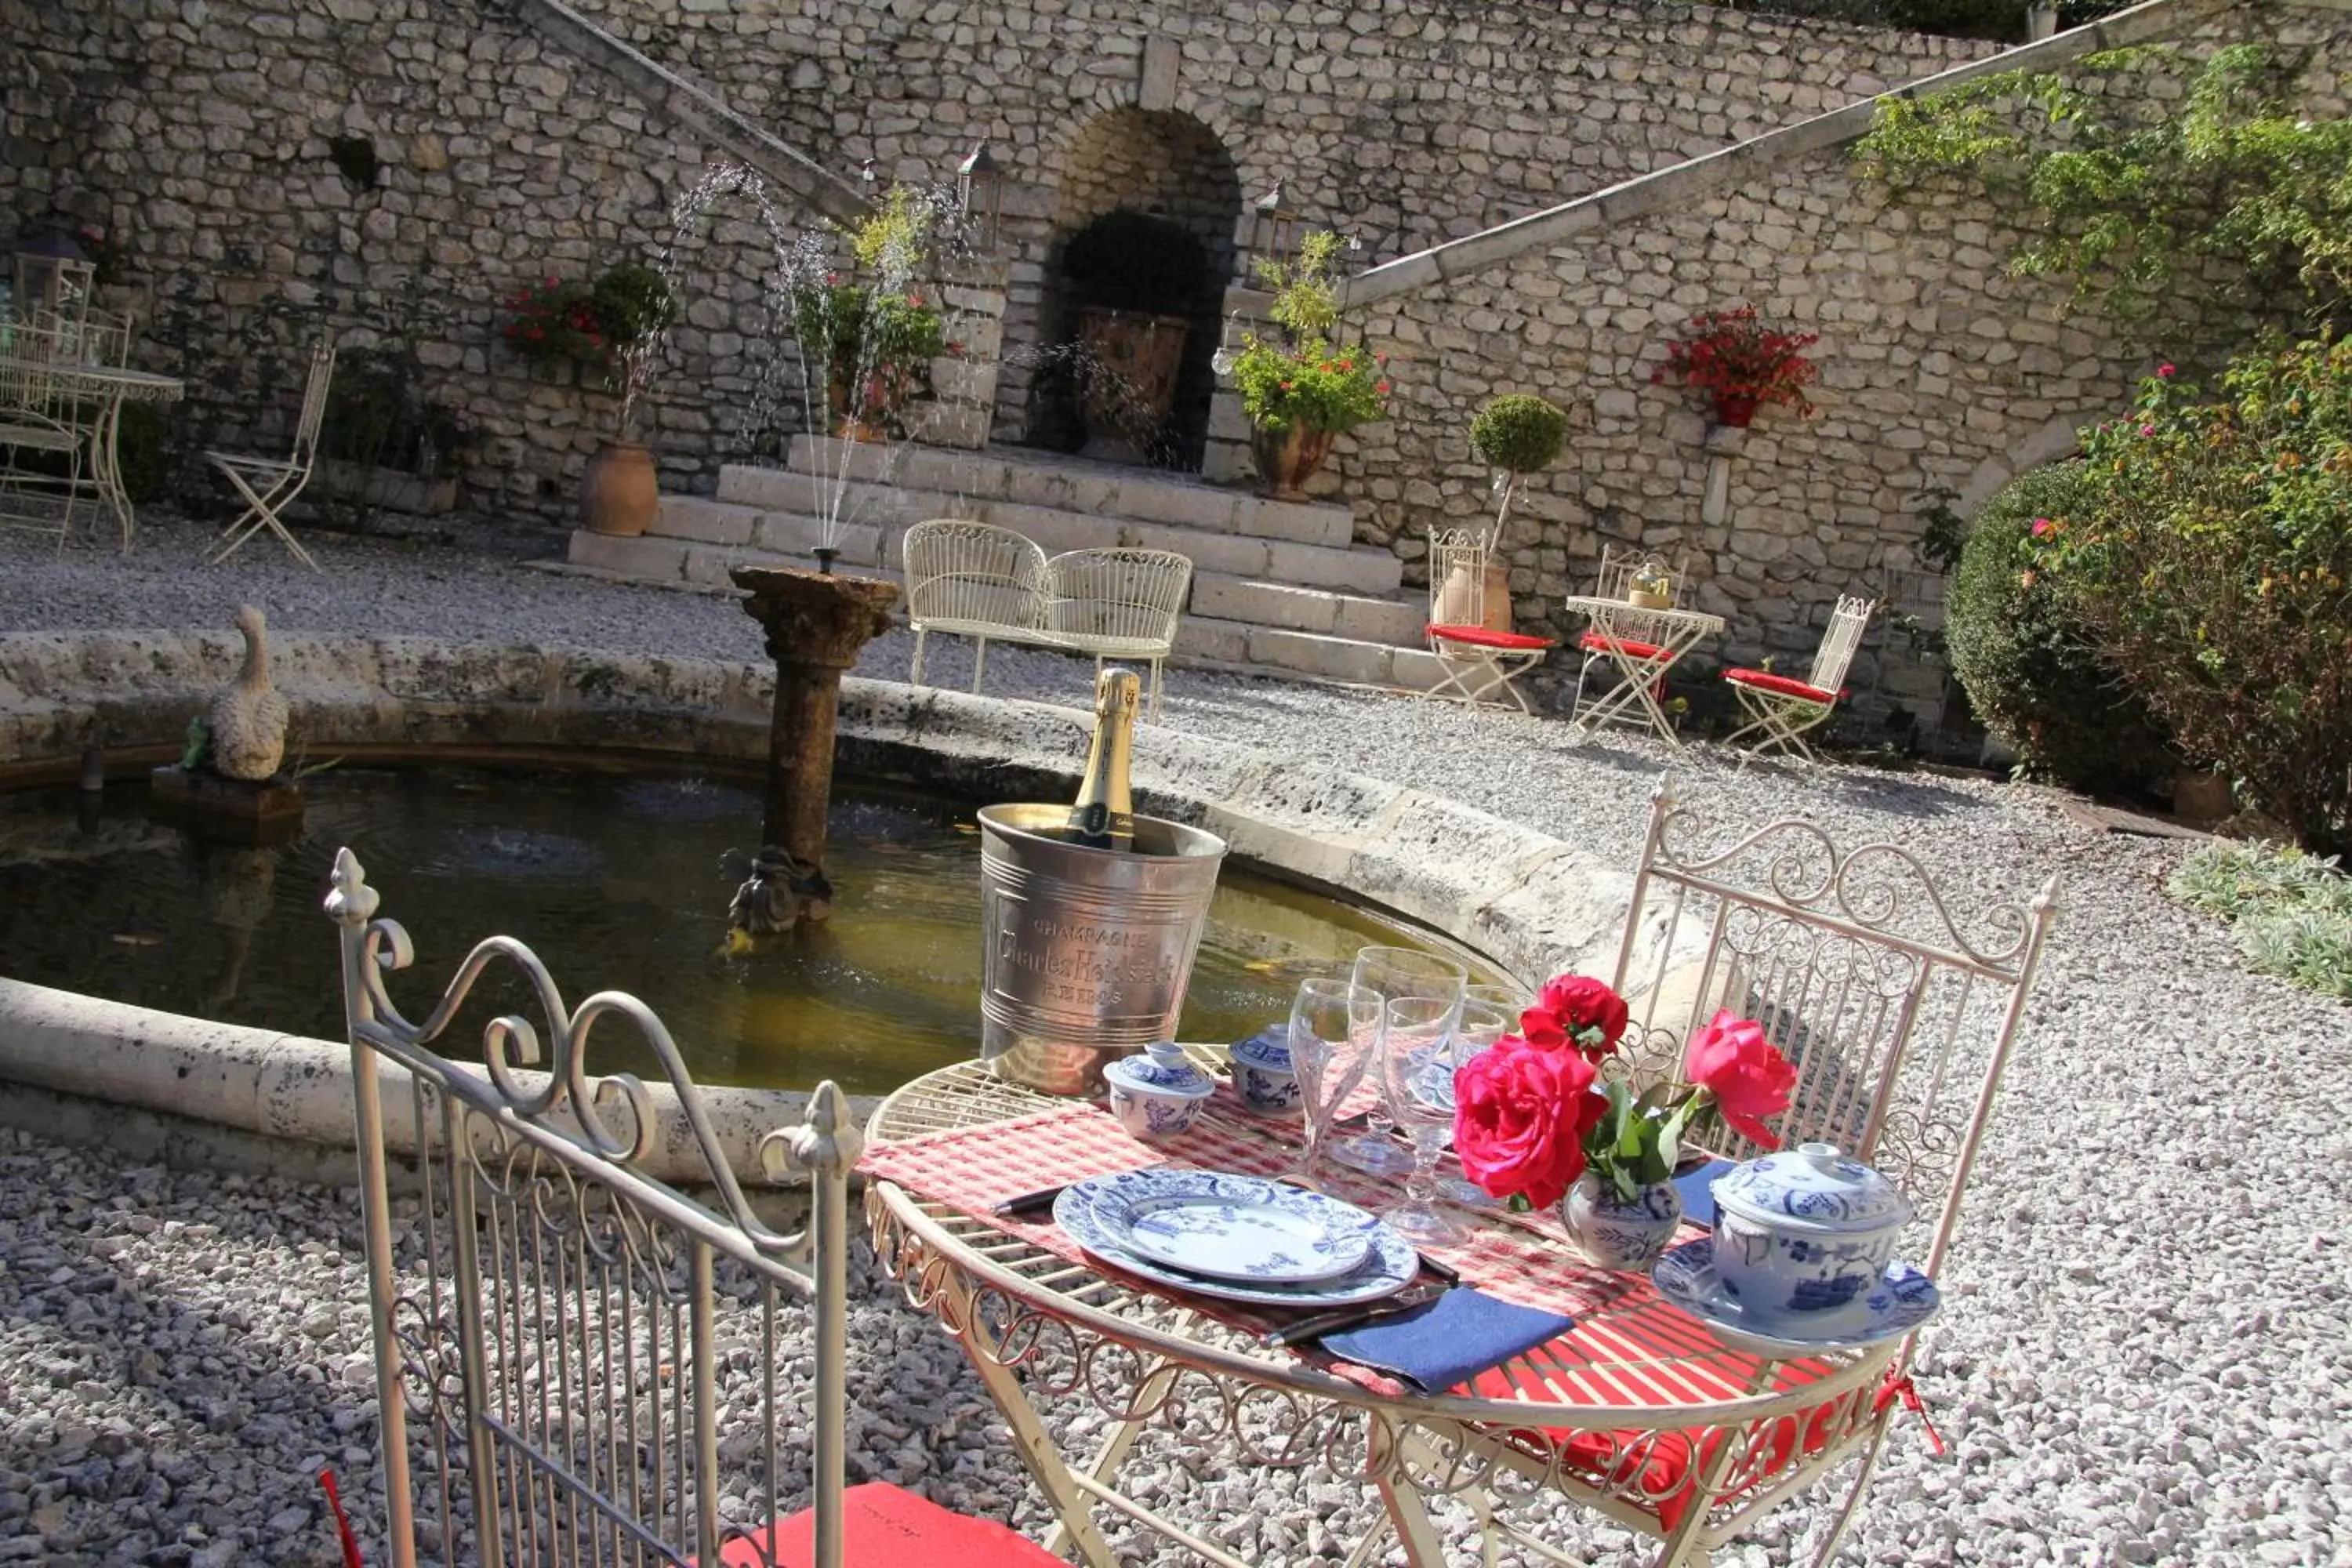 Restaurant/places to eat in Demeure des Vieux Bains